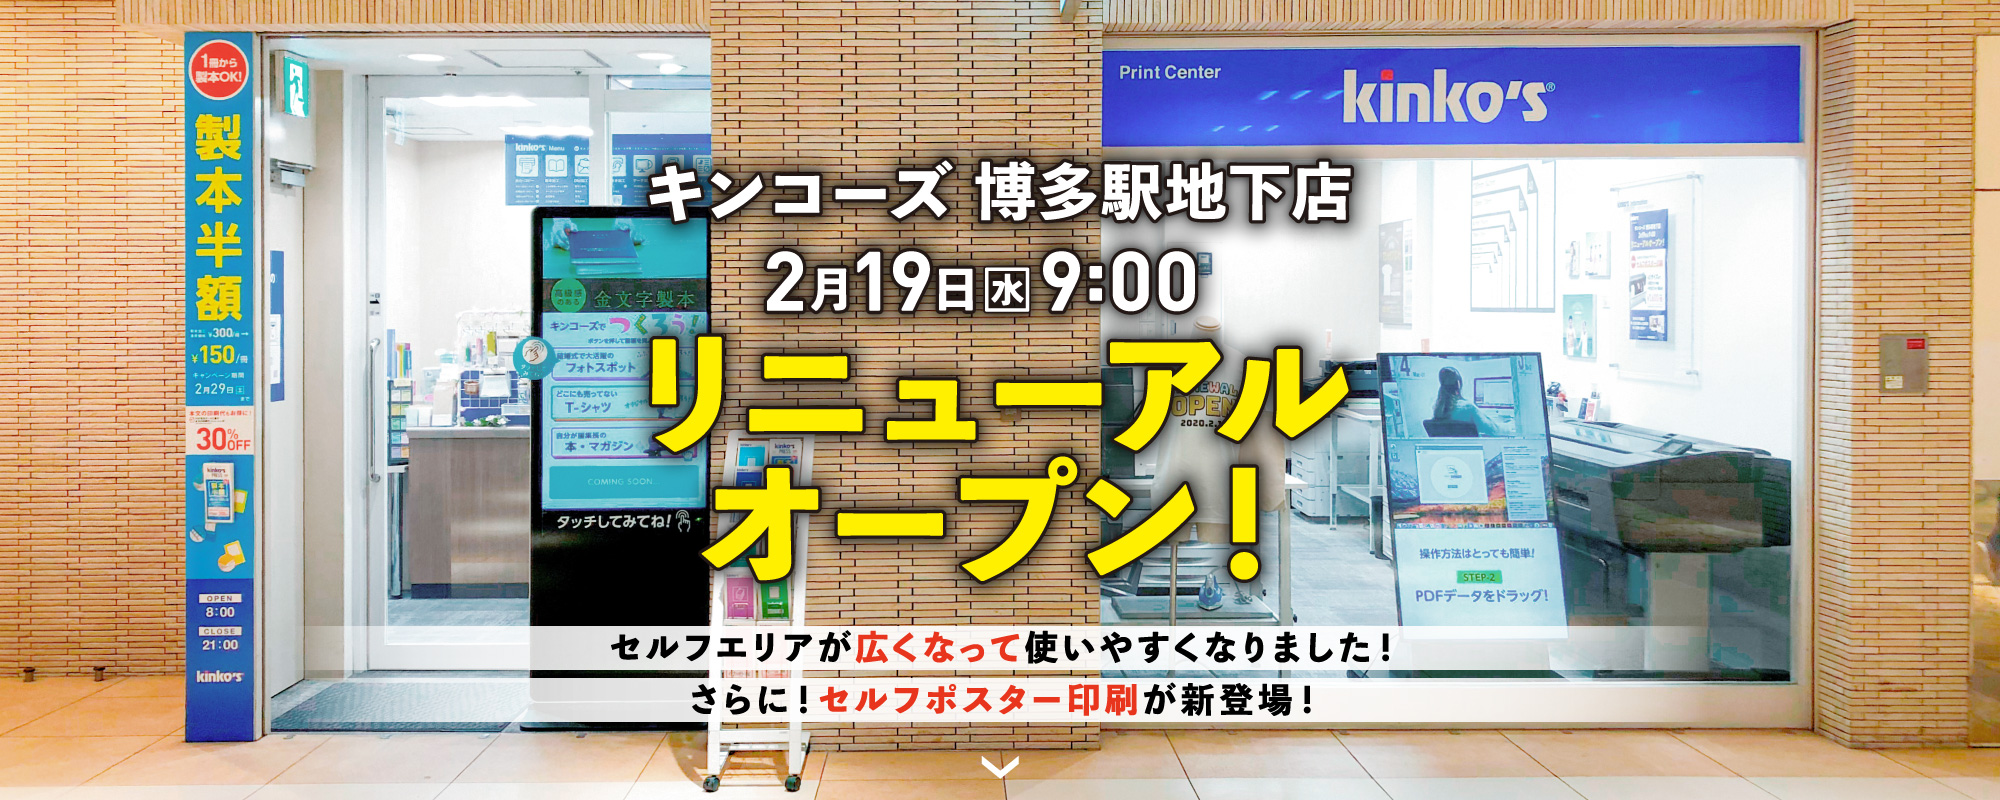 博多駅地下店リニューアルオープン キンコーズ 九州 中四国 Kinko S